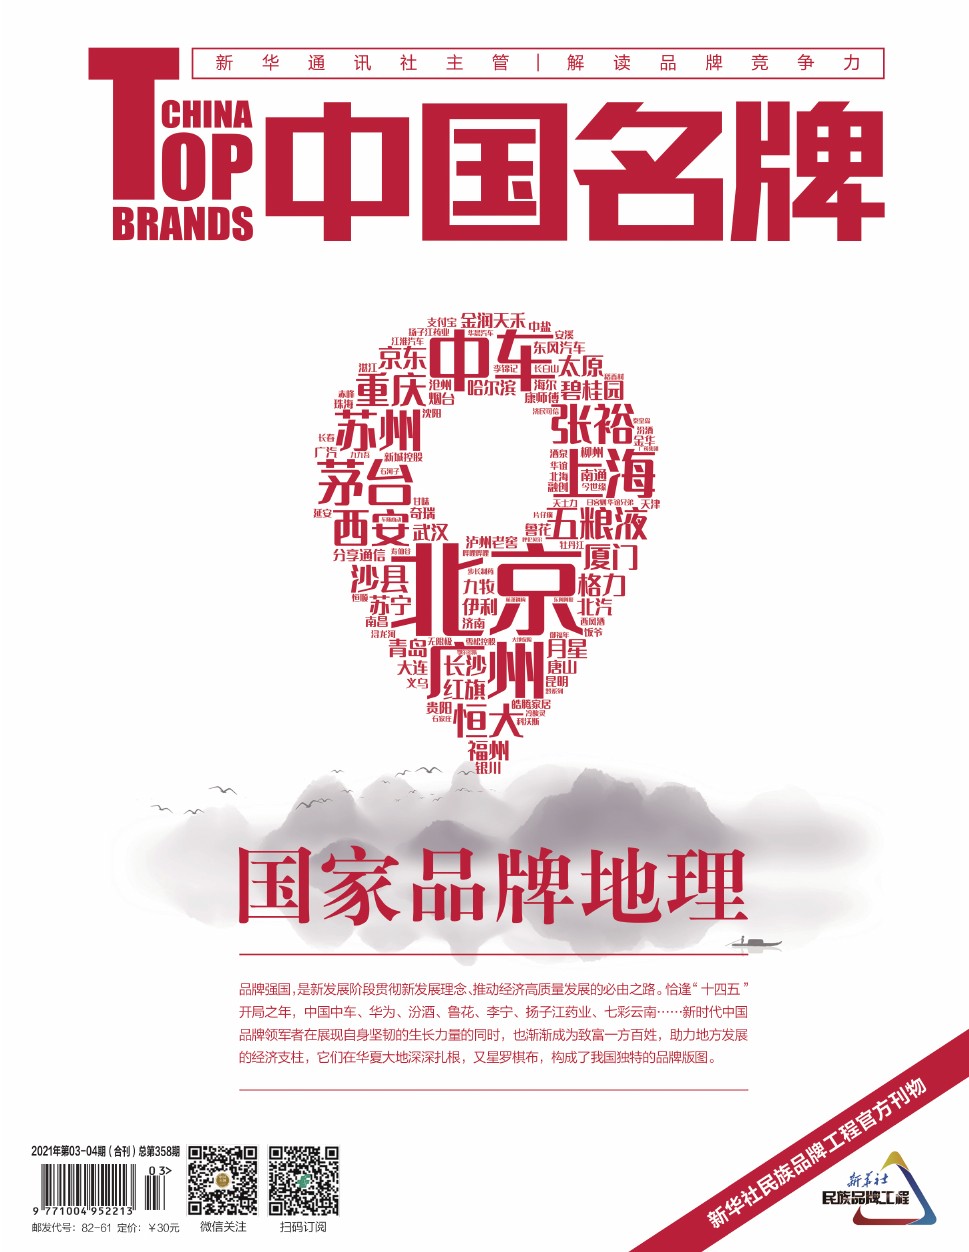 《中国名牌》电子杂志2021年第0304期合刊